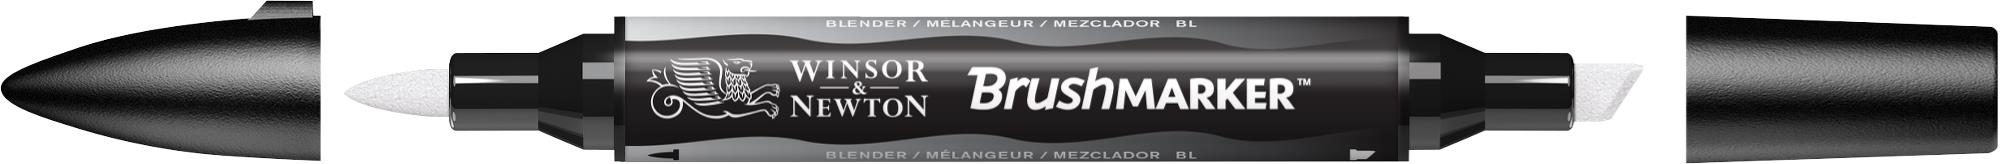 BrushMarker - Stylo pinceau et marqueur - blender